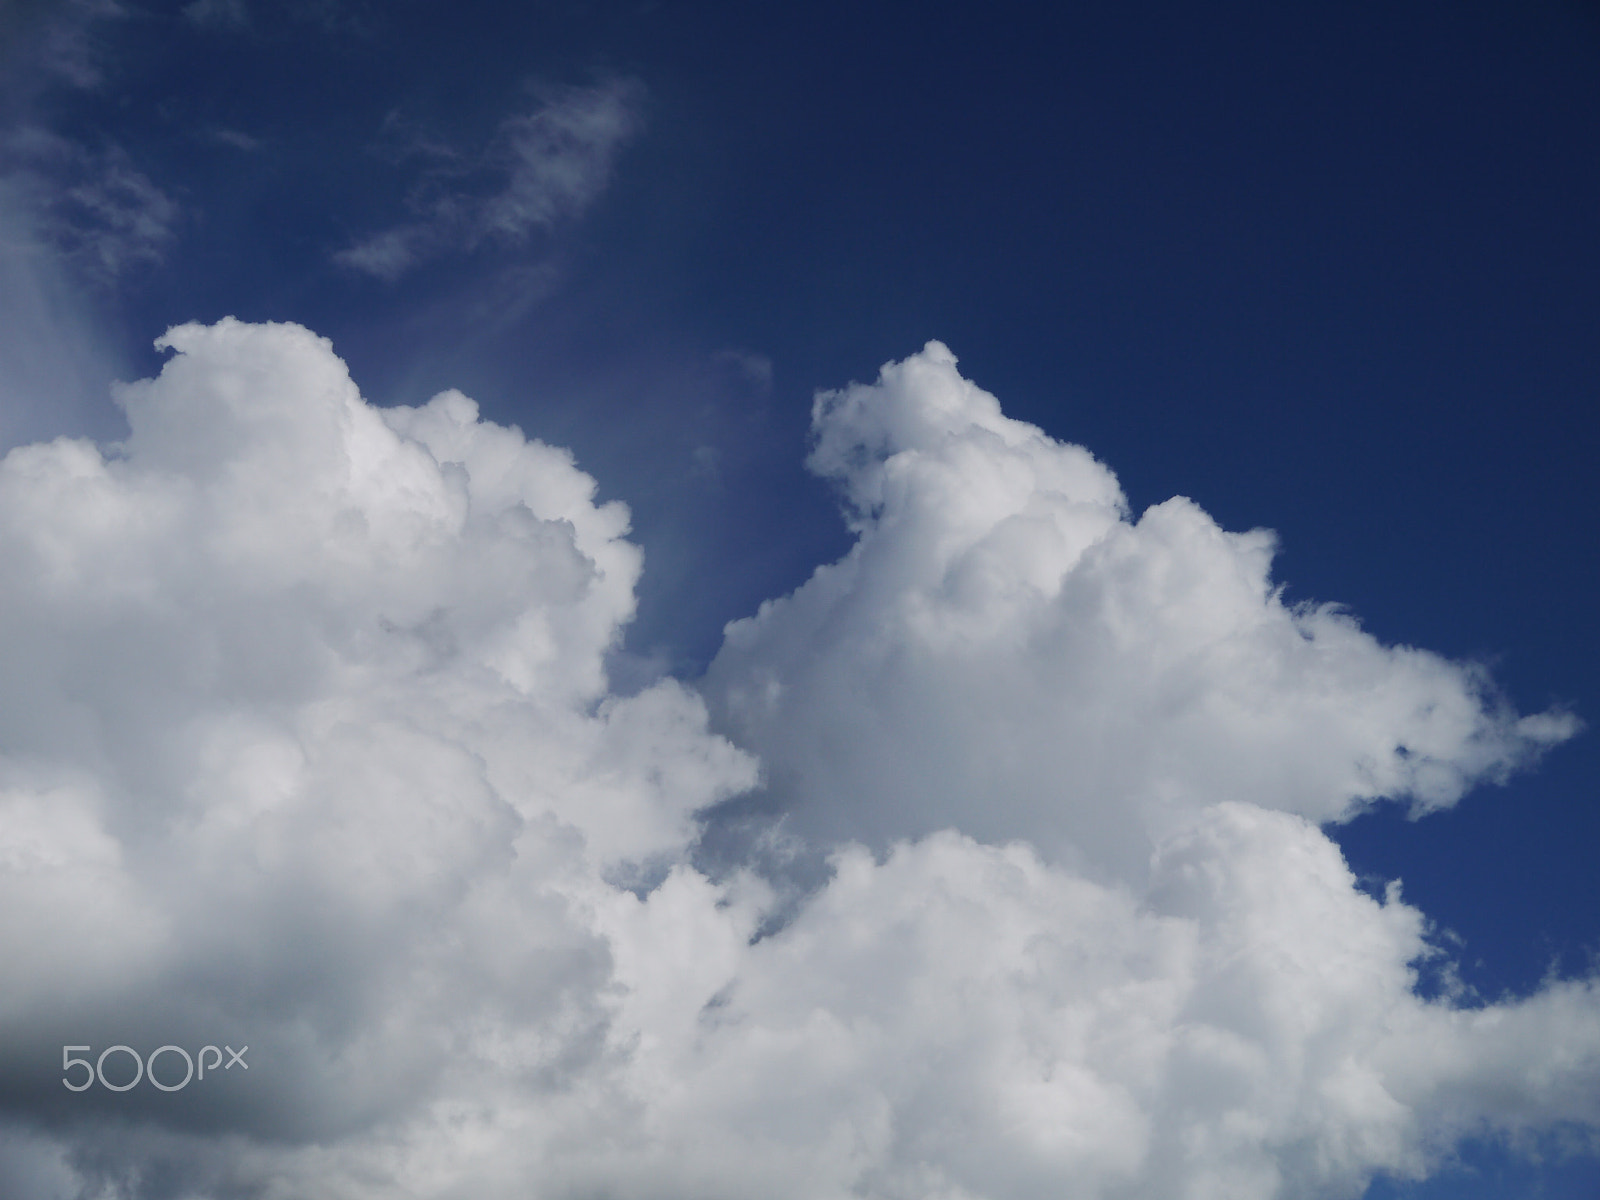 Panasonic Lumix DMC-G2 sample photo. Blue sky with cloud closeup photography